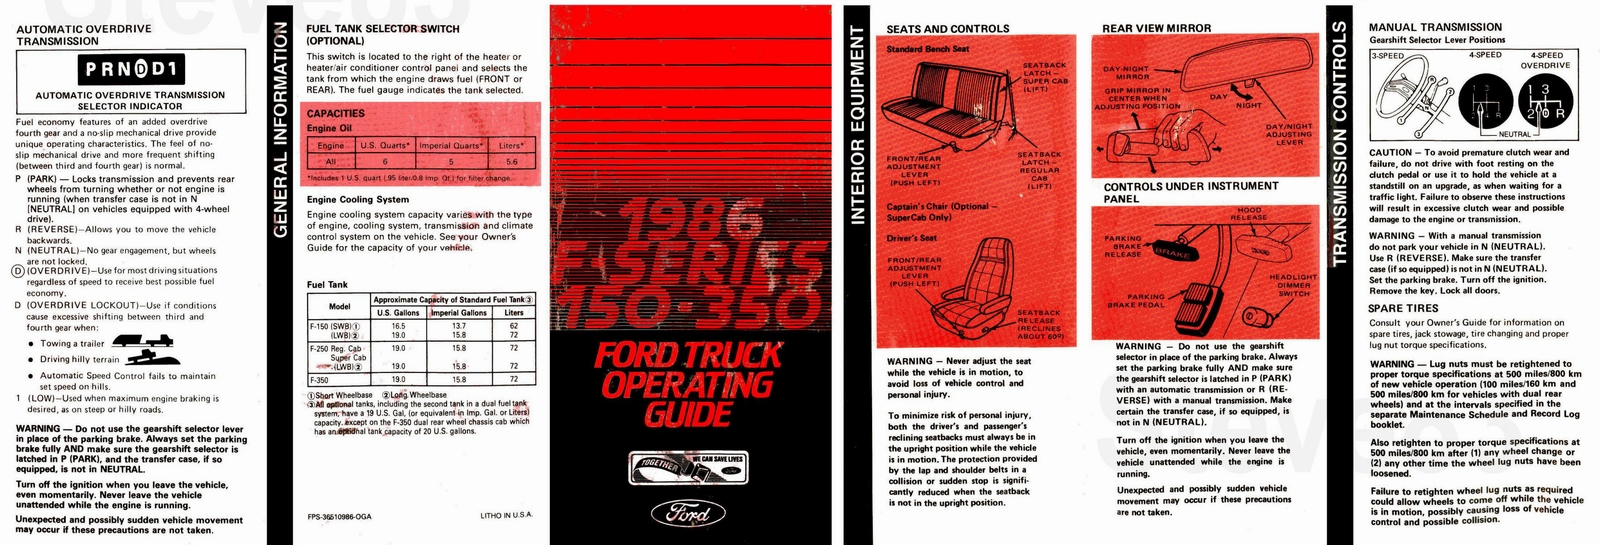 n_1986 Ford F-150 Operating Guide-01.jpg